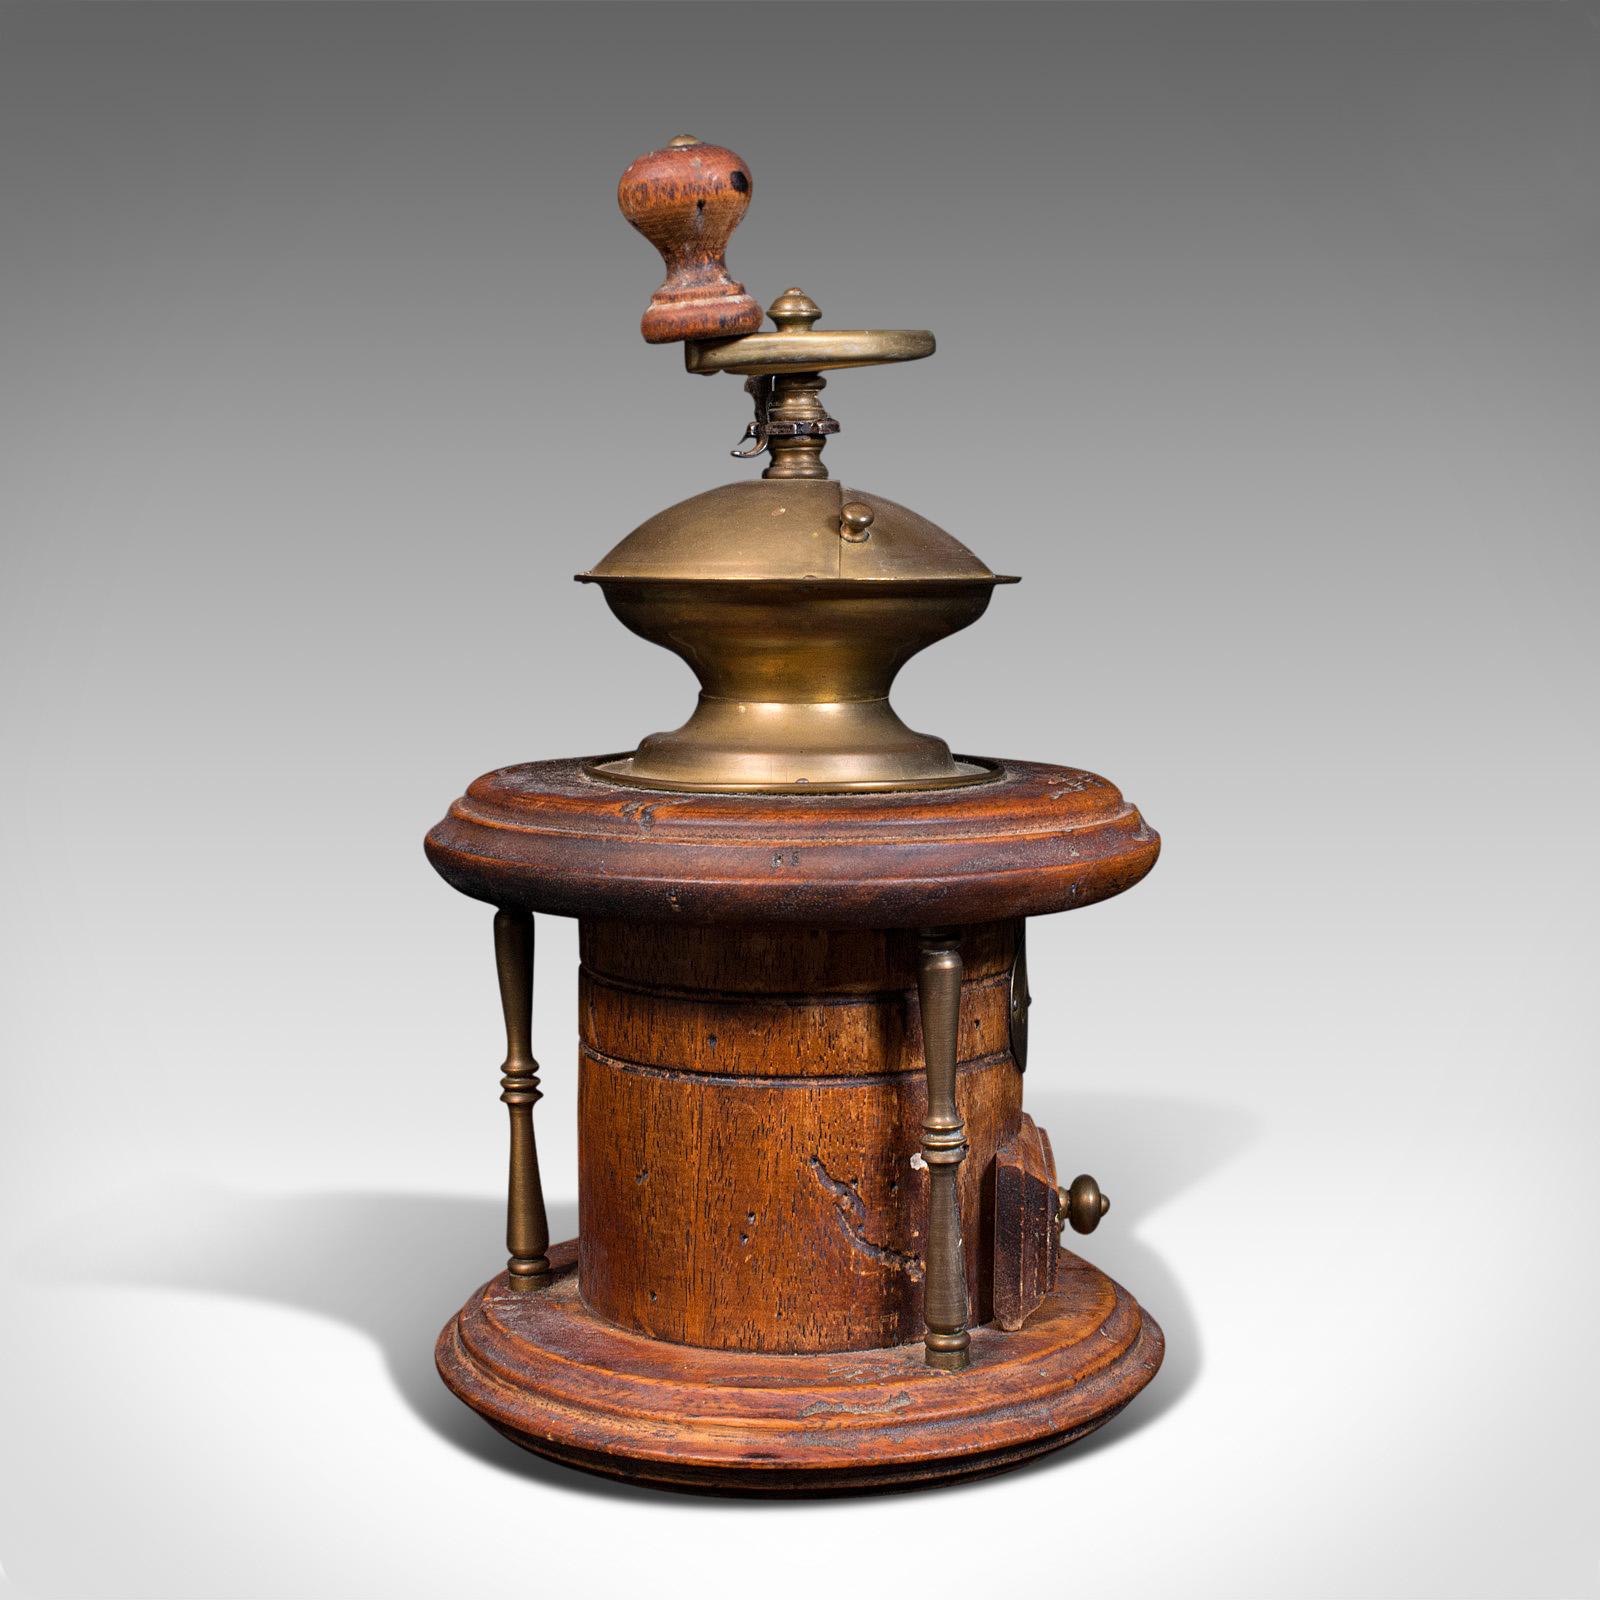 old coffee grinder